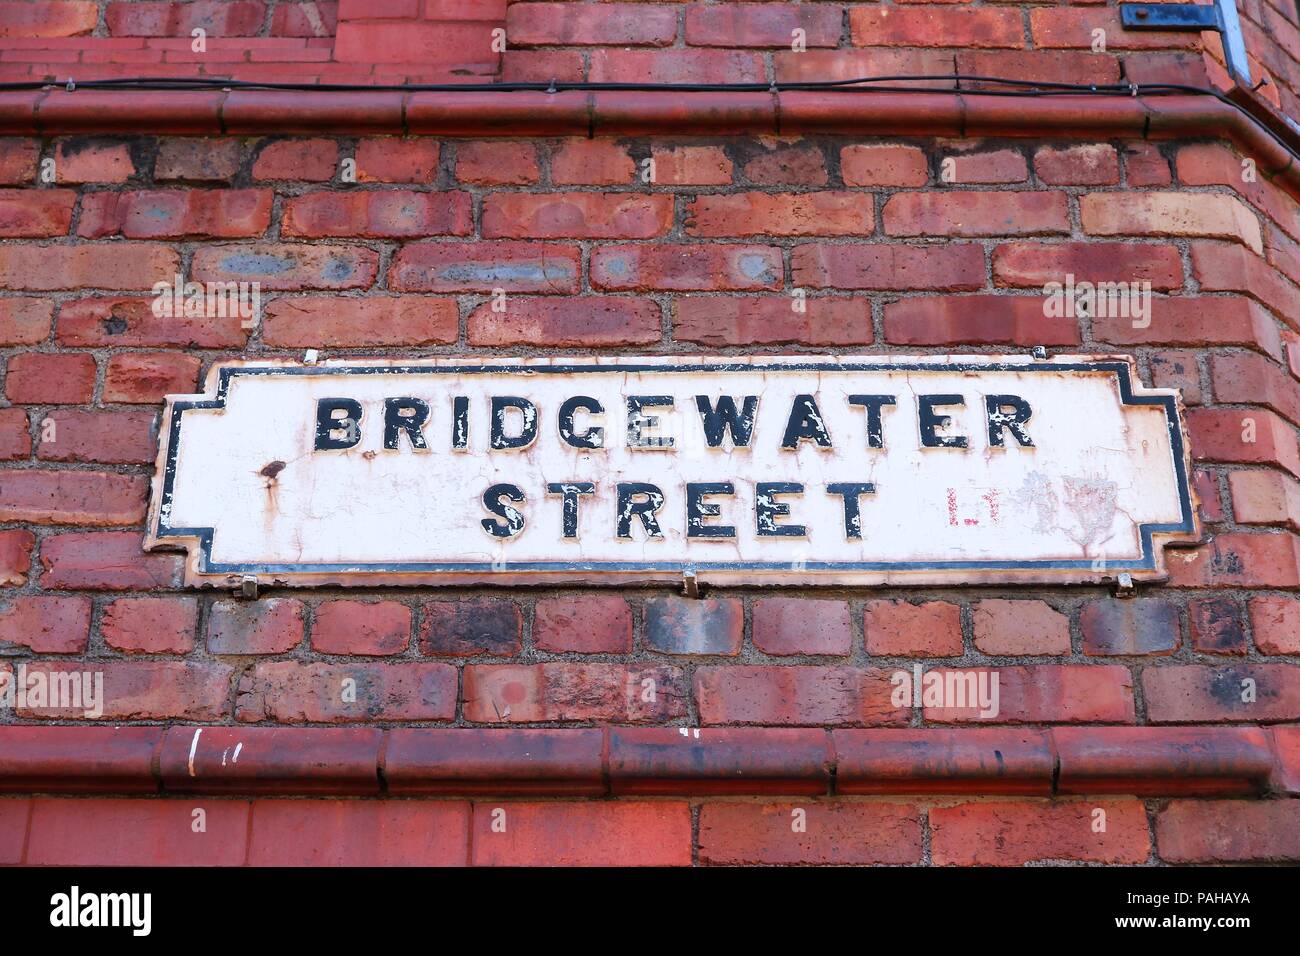 Liverpool - ciudad del condado de Merseyside, al Noroeste de Inglaterra (UK). Bridgewater Street sign. Foto de stock